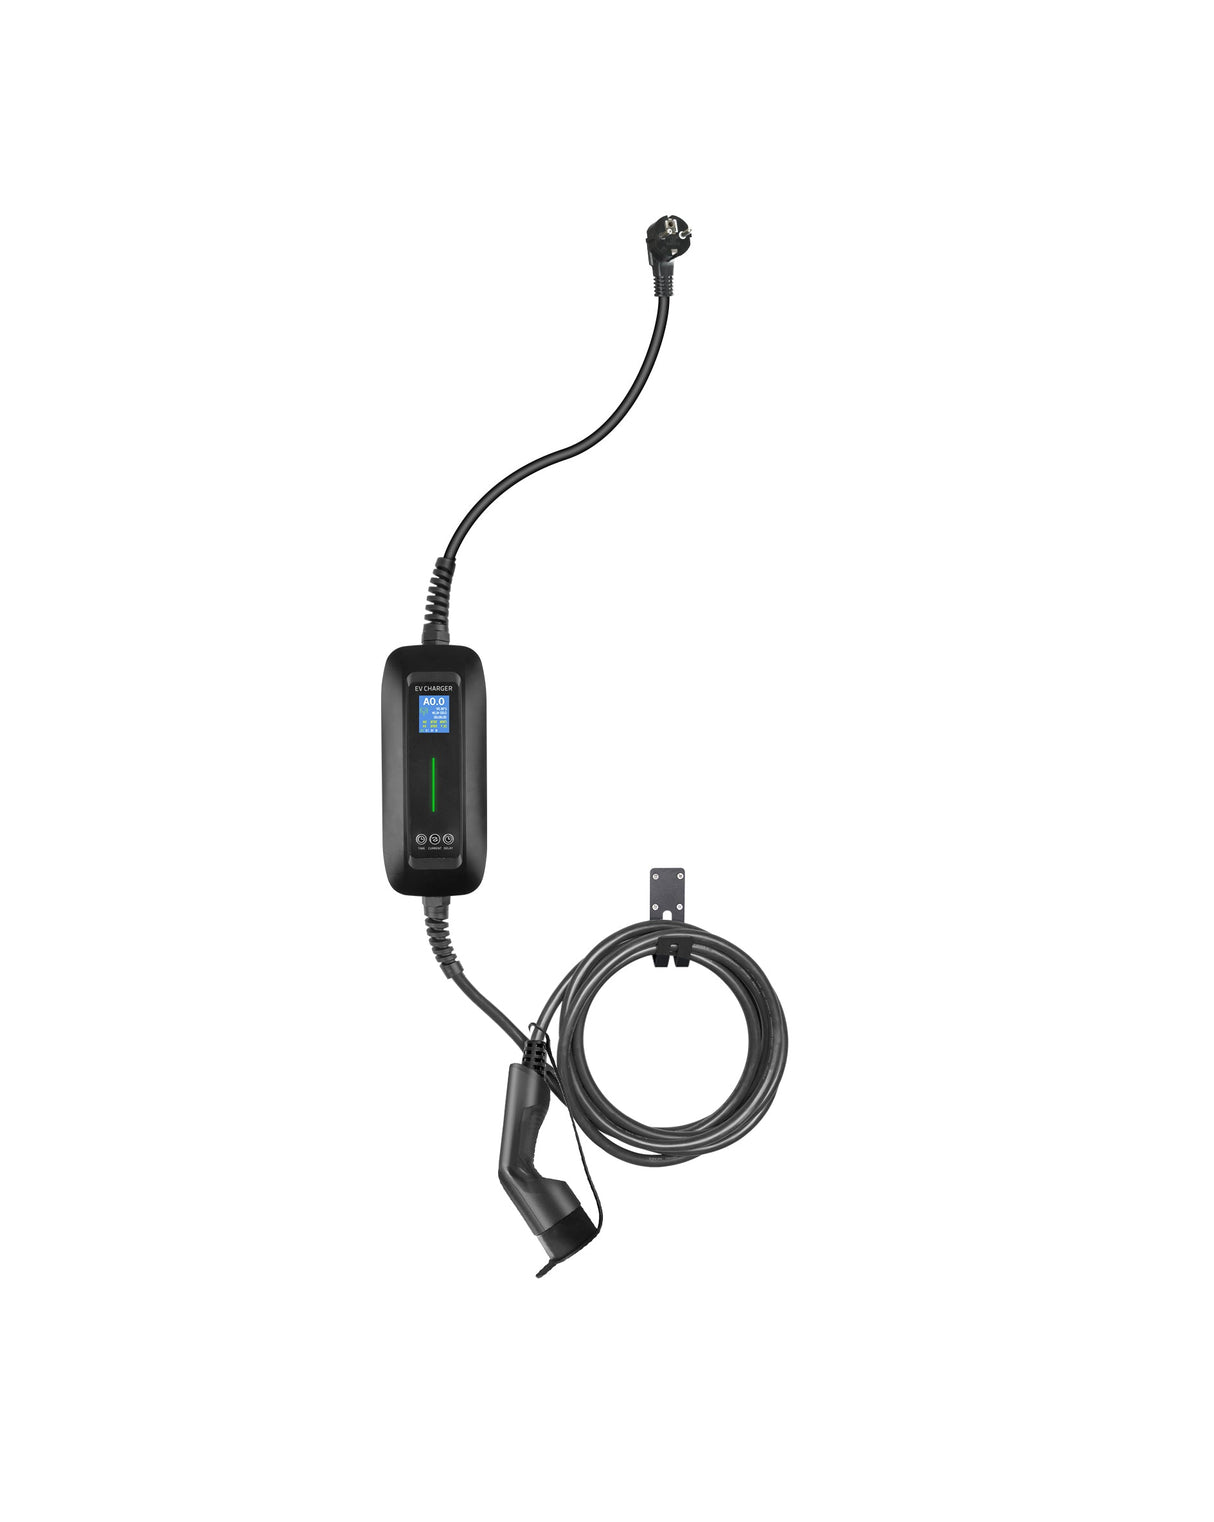 Chargeur mobile Smart Forfour - LCD Black Type 2 à Schuko - Fonction de chargement et de mémoire basalisée